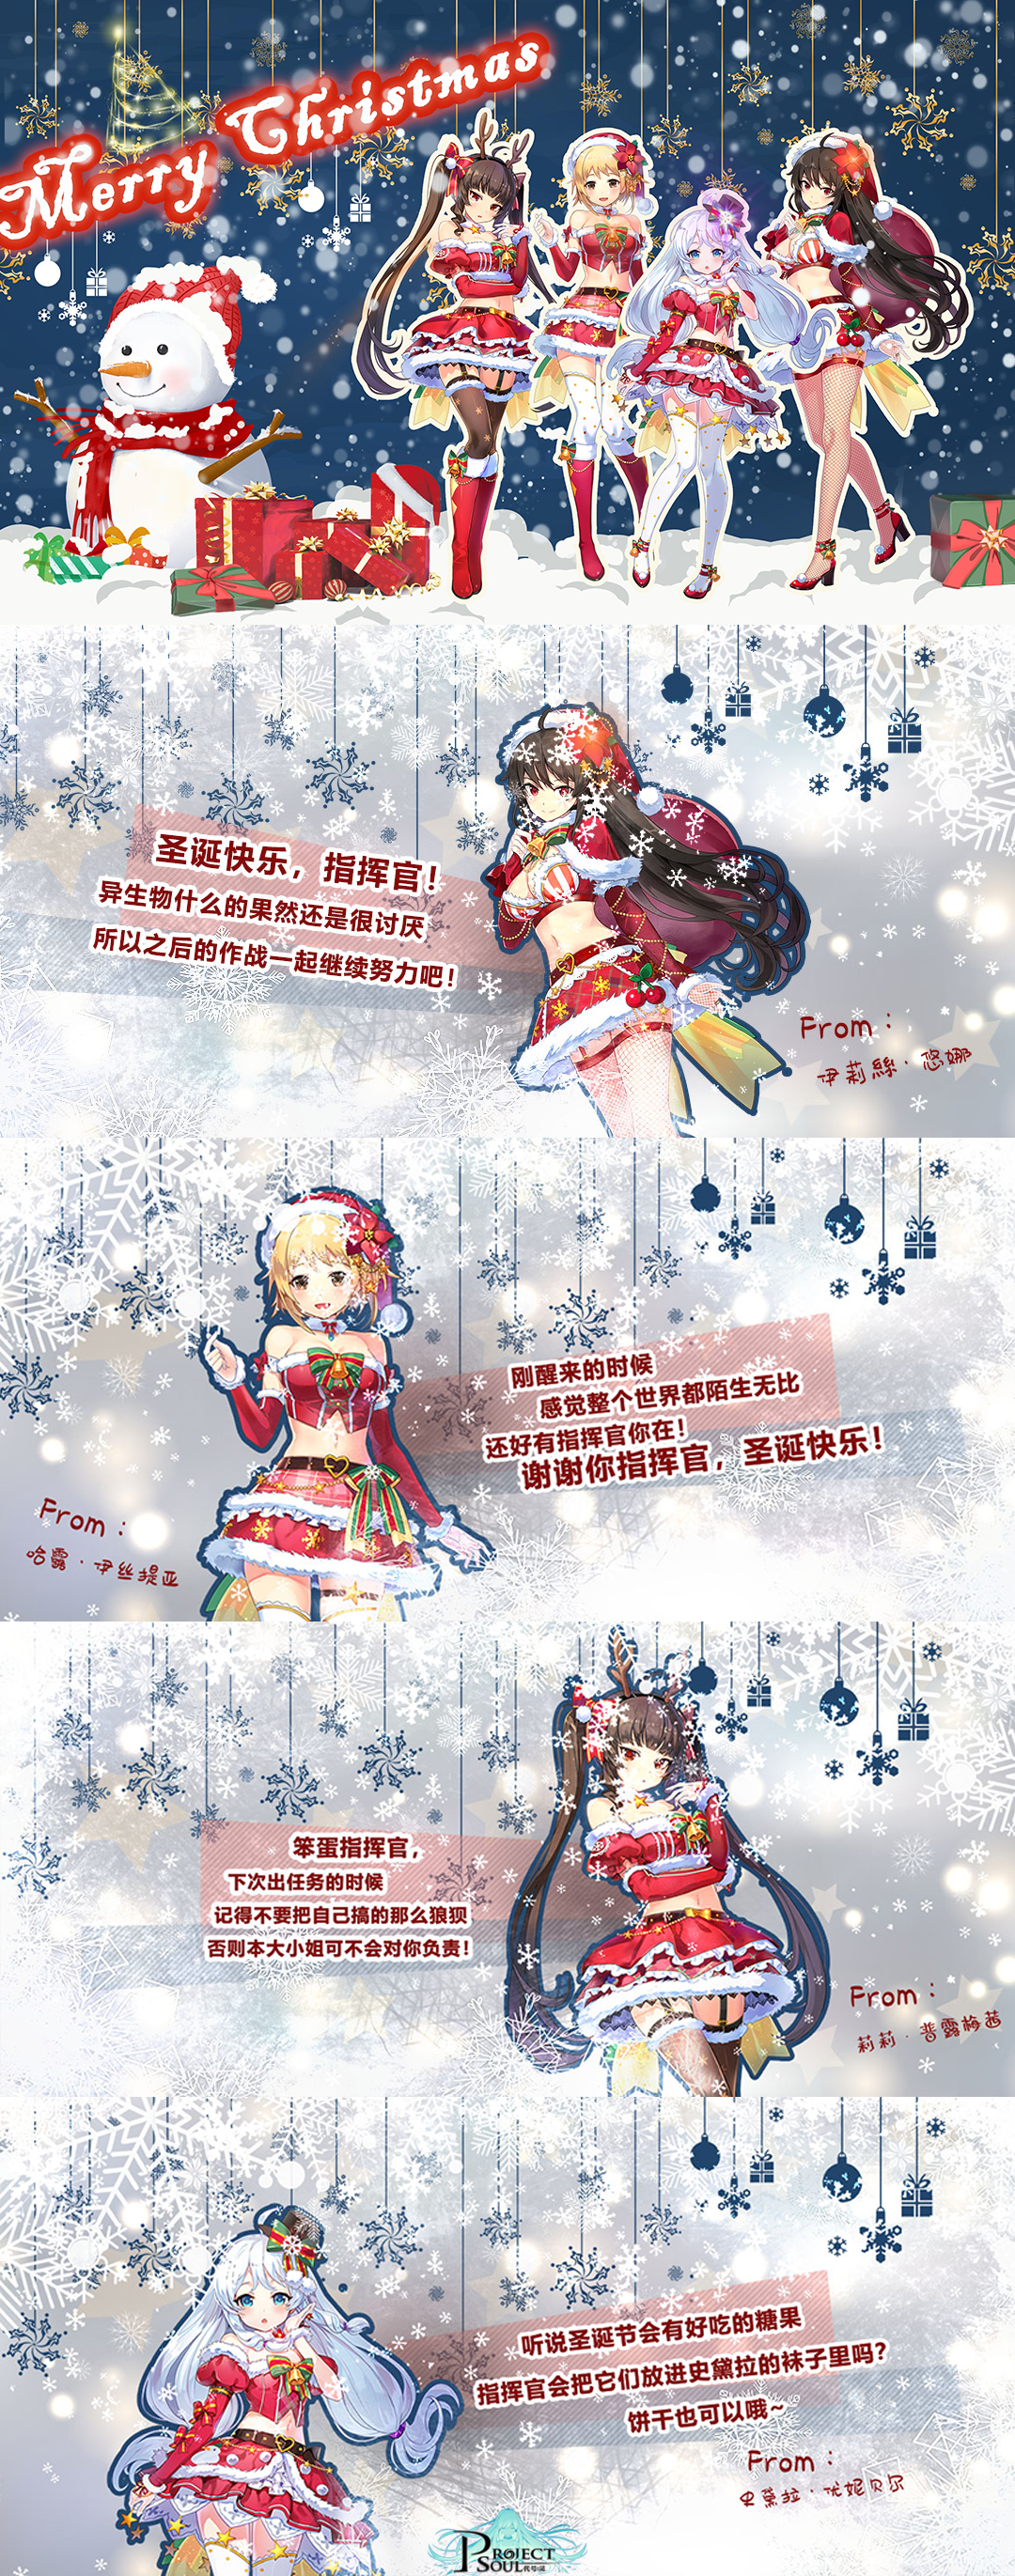 【已开奖】Merry Xmas！小姐姐为指挥官亲送圣诞祝福~